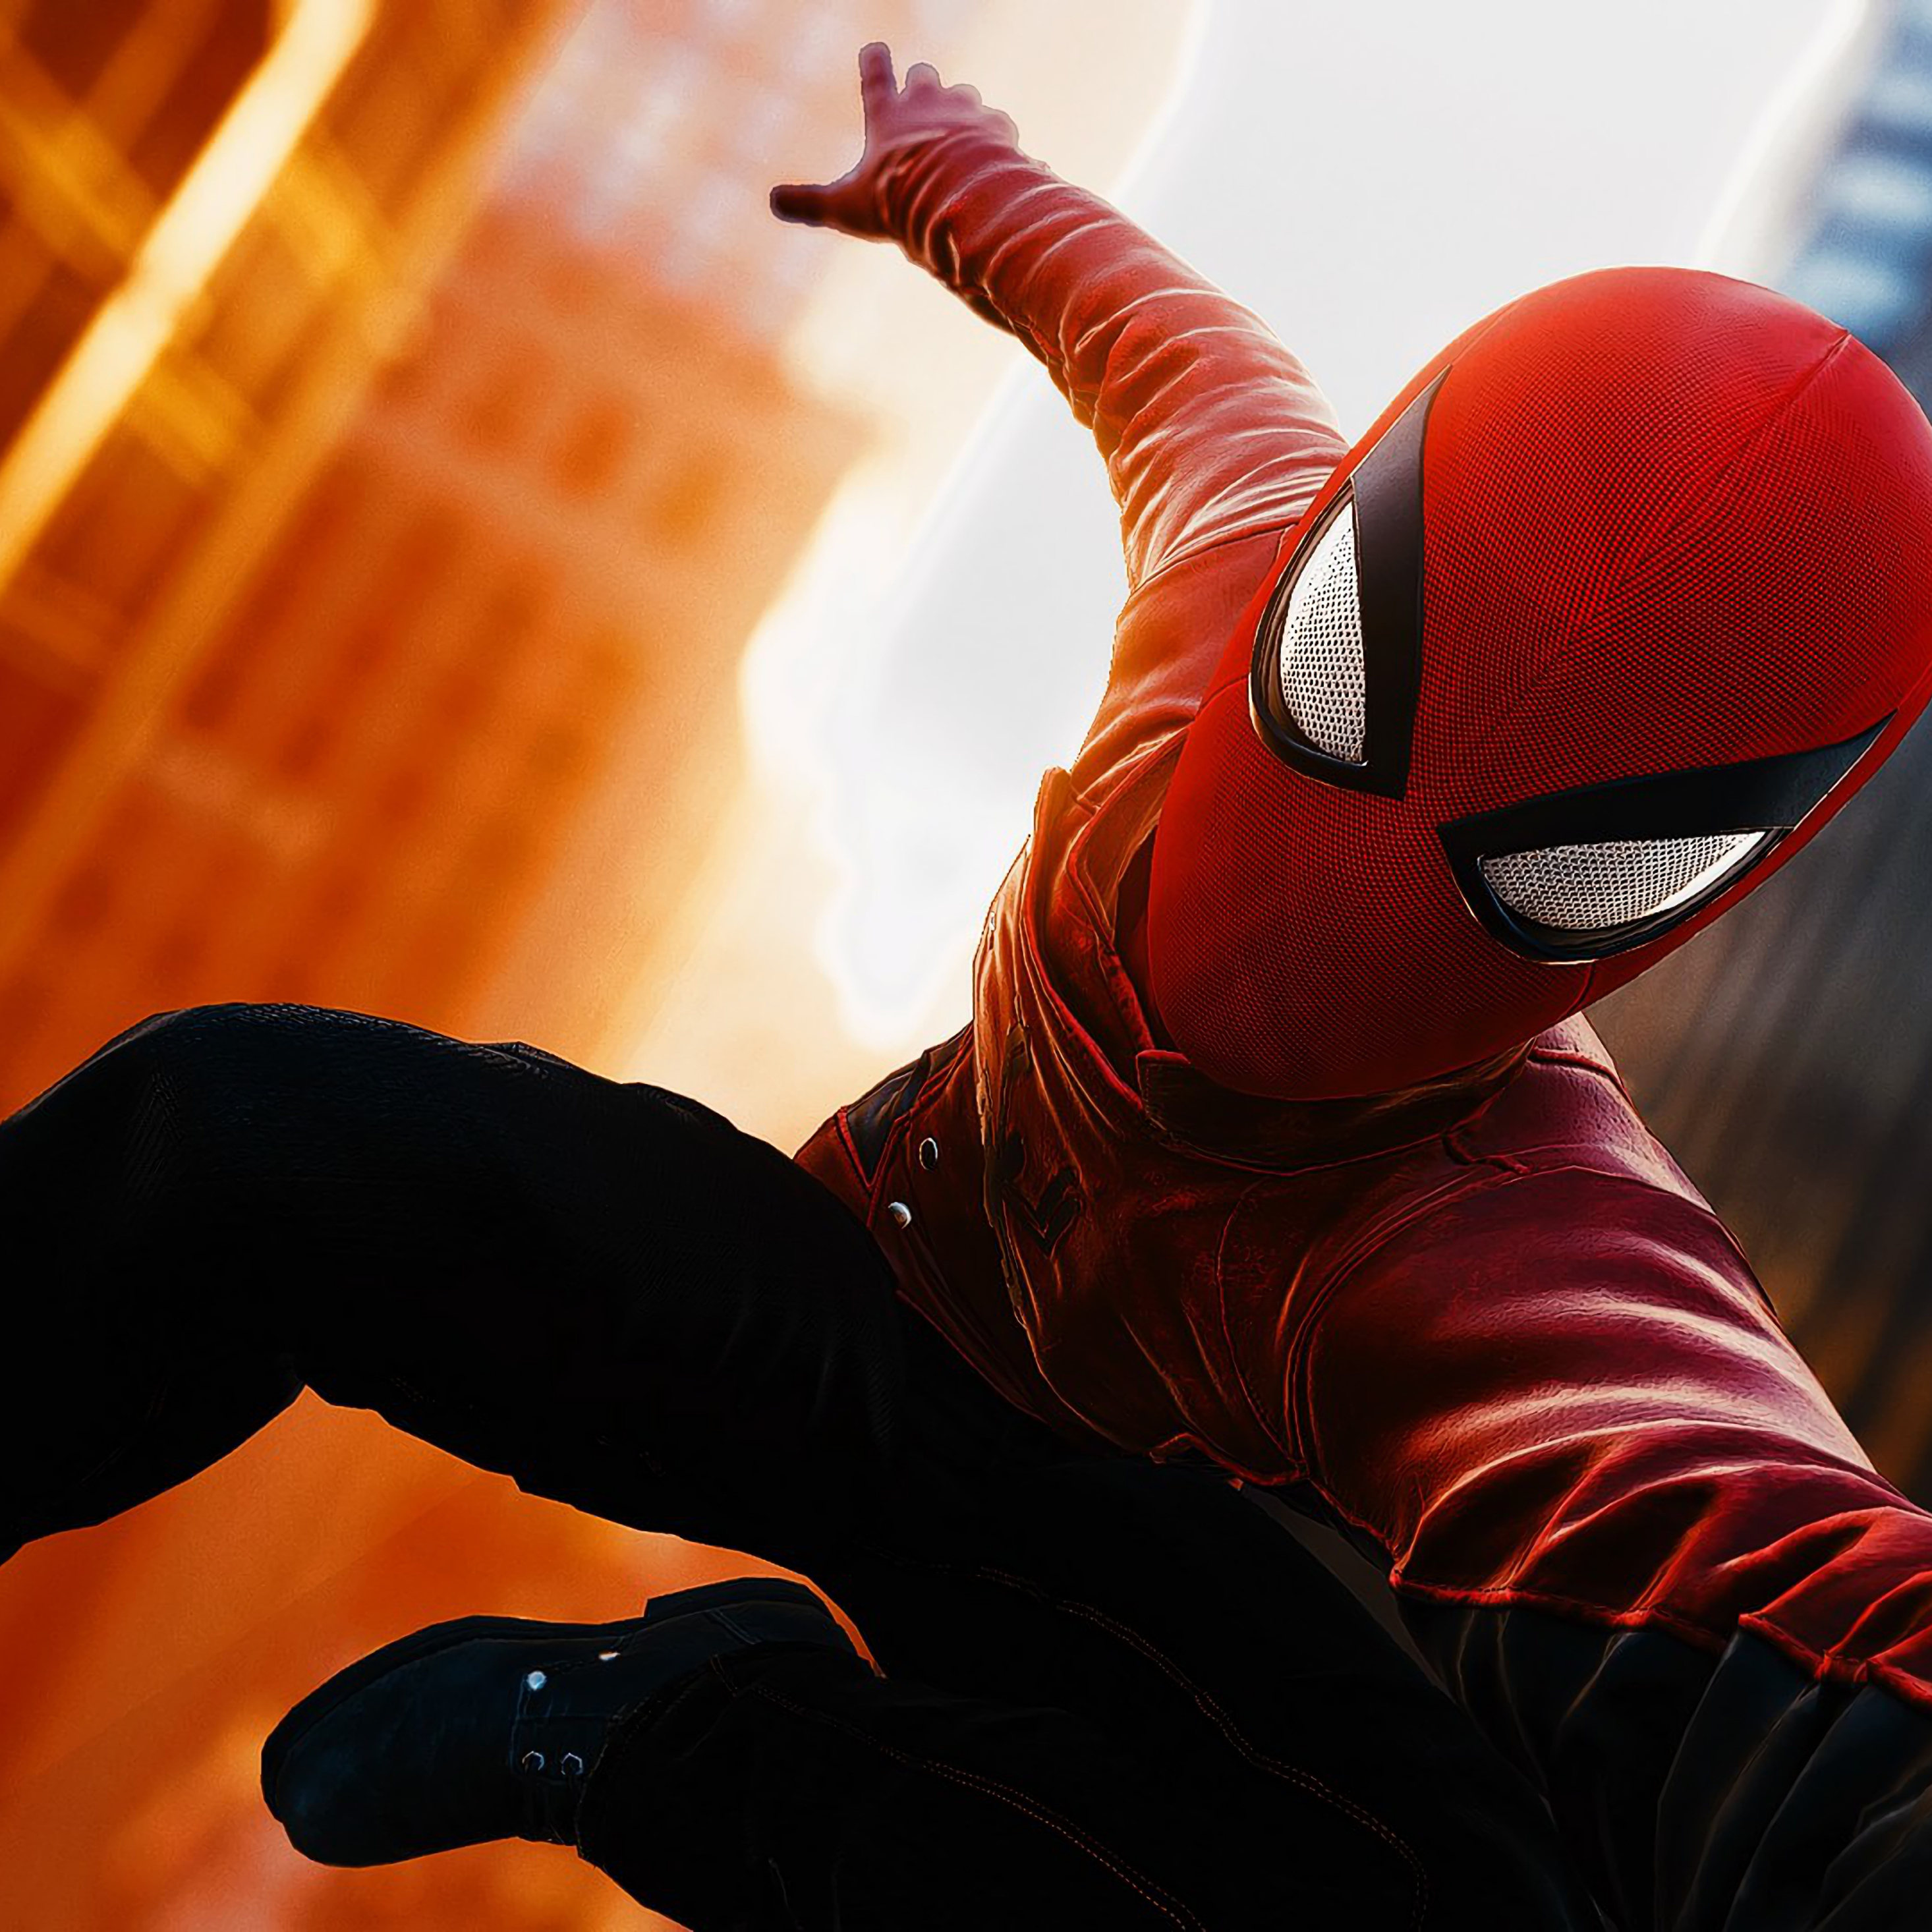 Фотки мен. Спайдер Мэн. Spider man ps4. Spider-man (игра, 2018). Spider man ps4 человек паук.